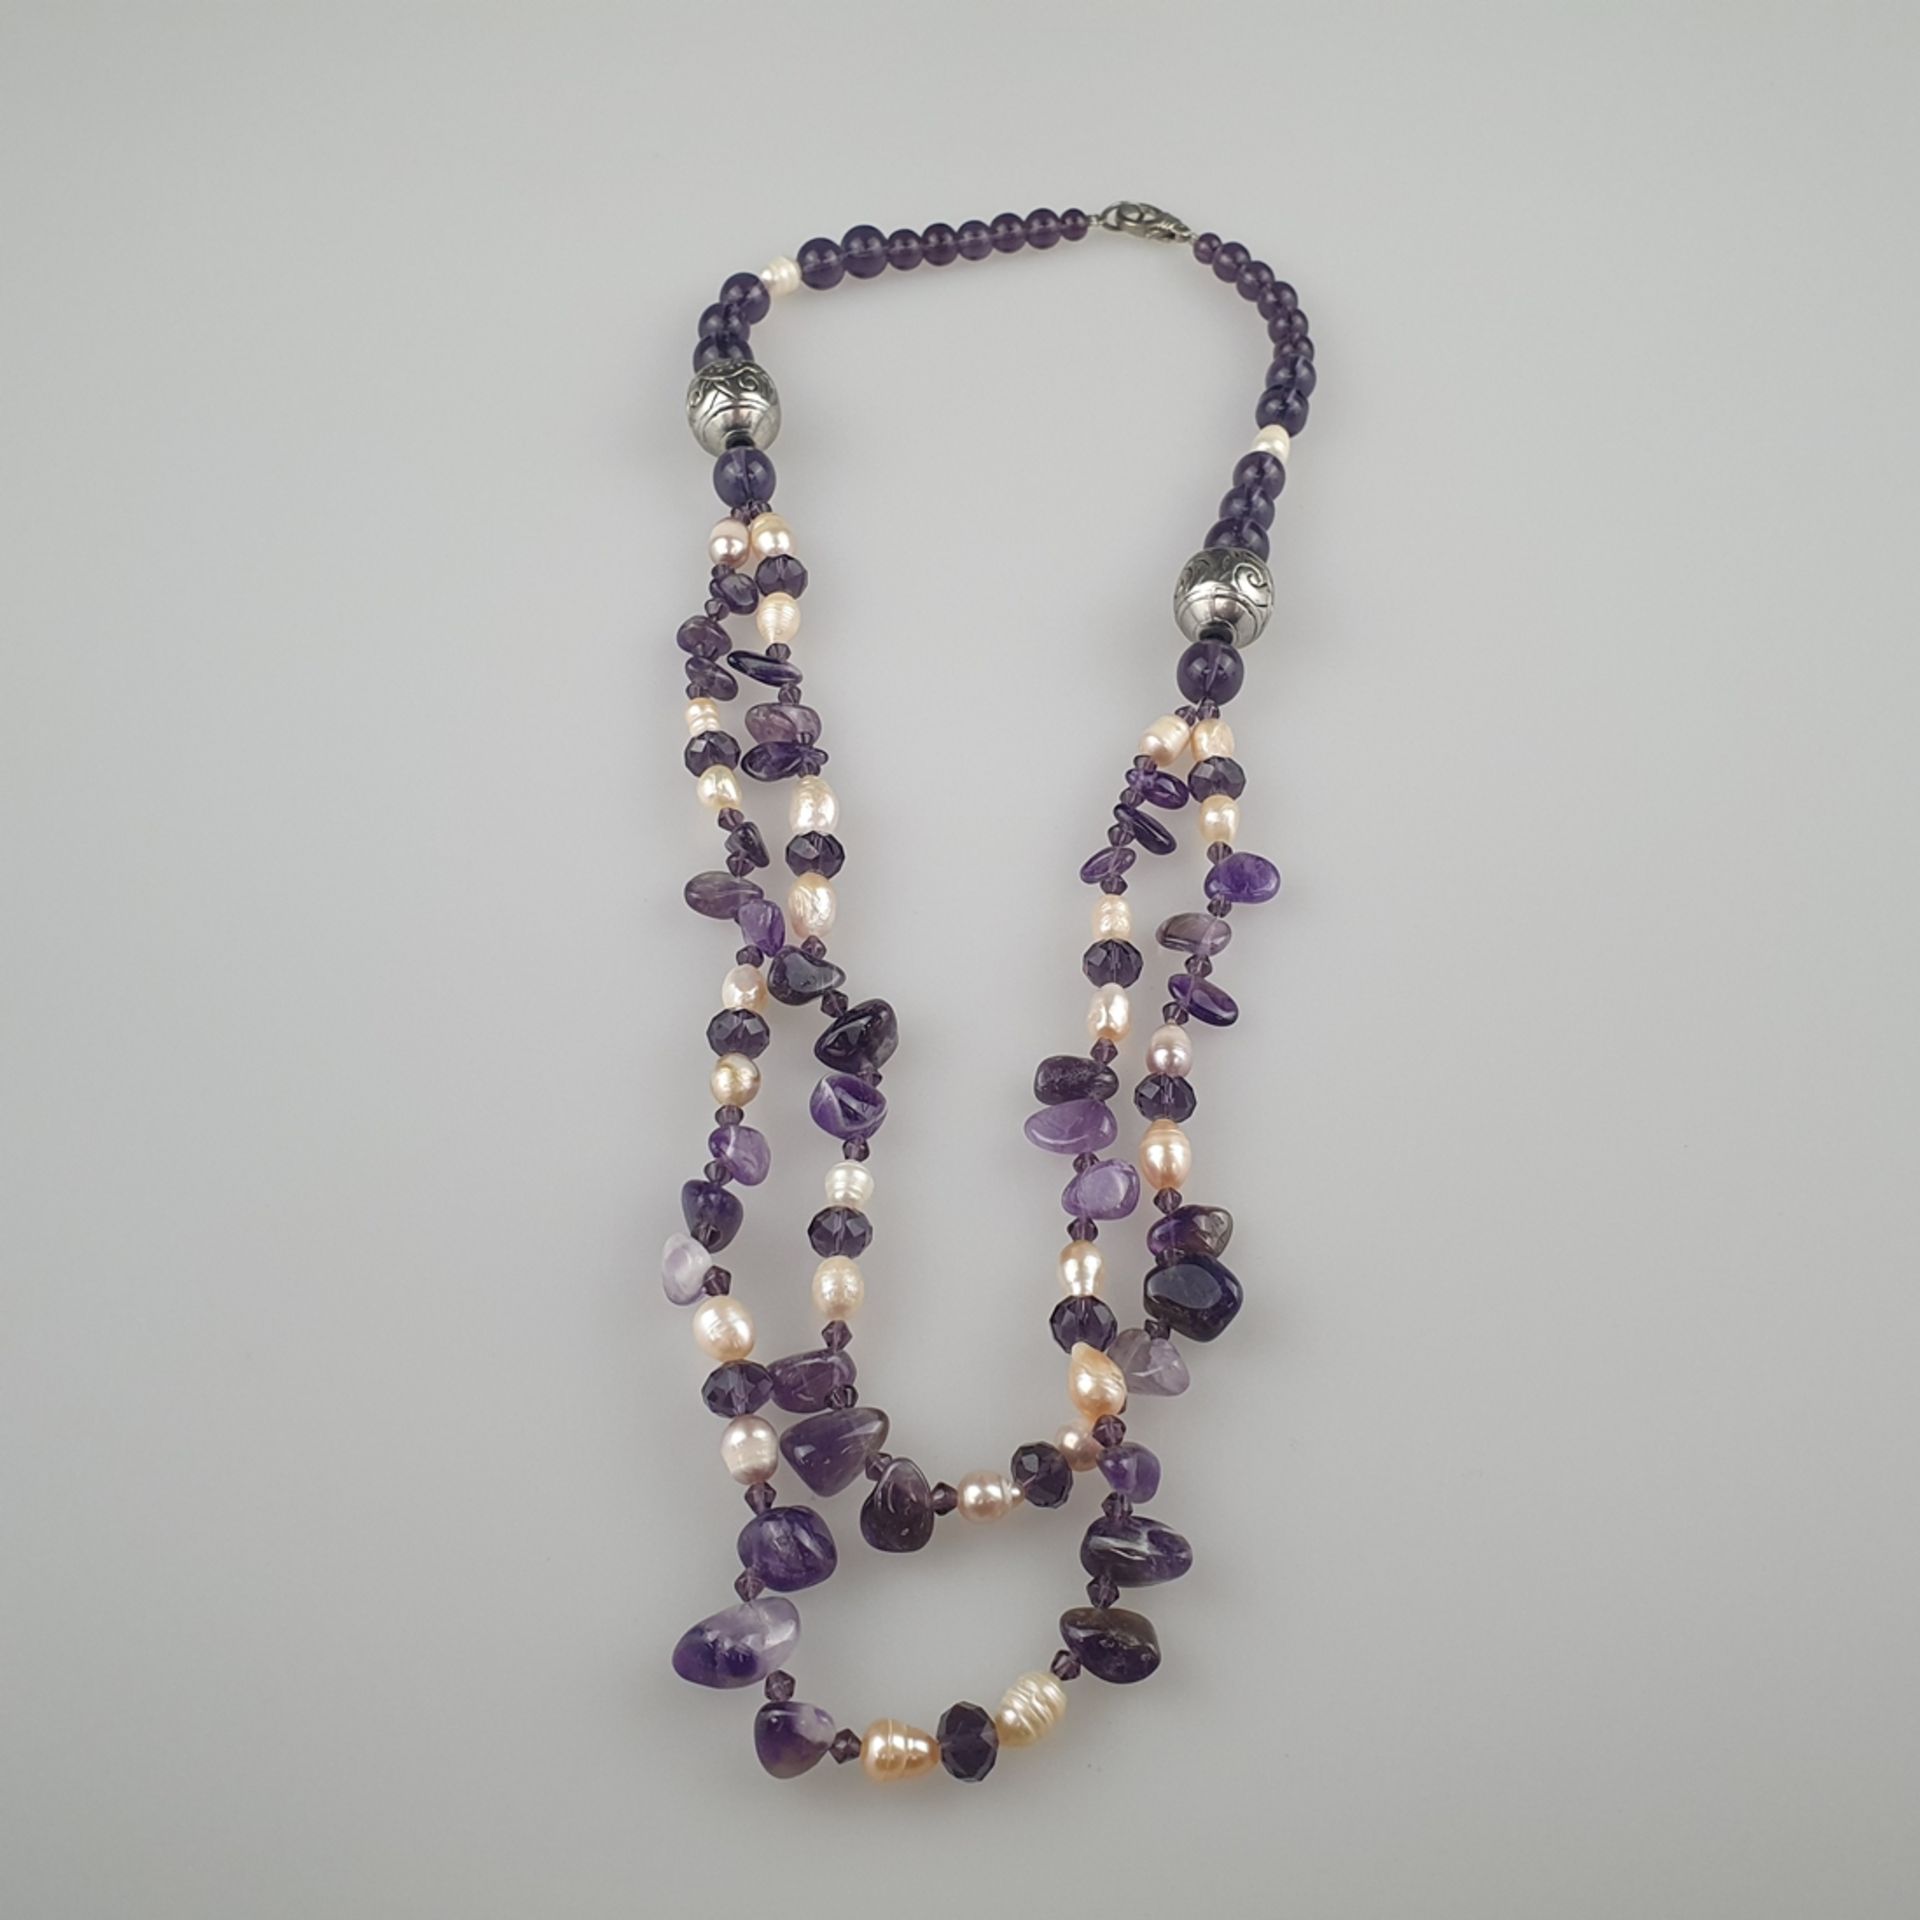 Halskette - zum Teil doppelreihig, Amethystperlen und -trommelsteine, längliche Süßwasserperlen, si - Bild 4 aus 5